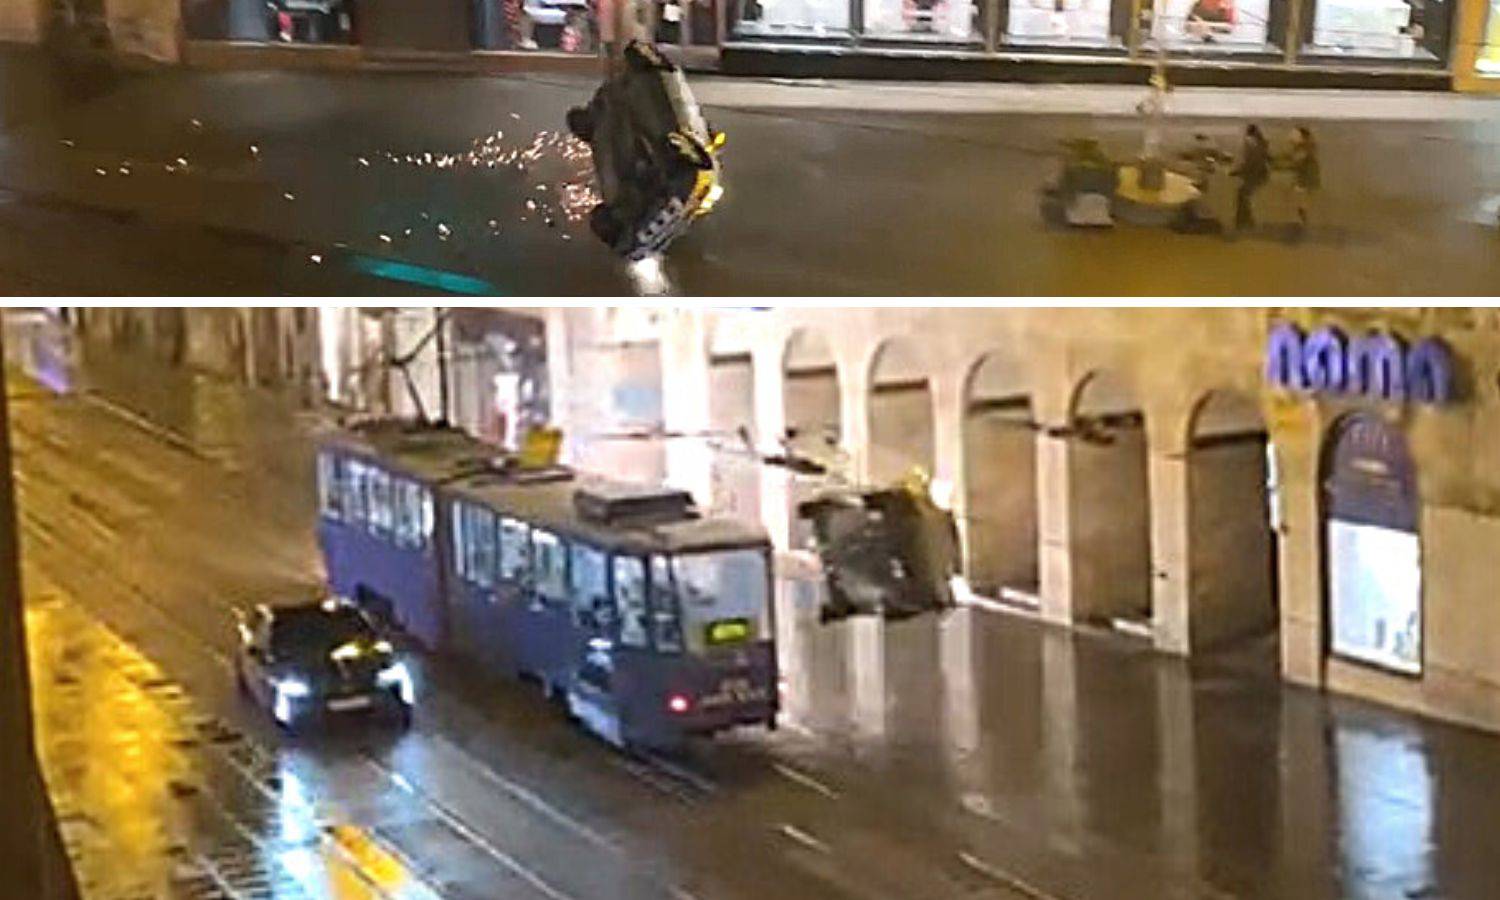 Snimka iz Zagreba! Jure Ilicom, eksplozije, iskre, auto na krovu: 'Strah me, pa tamo mi kći hoda'